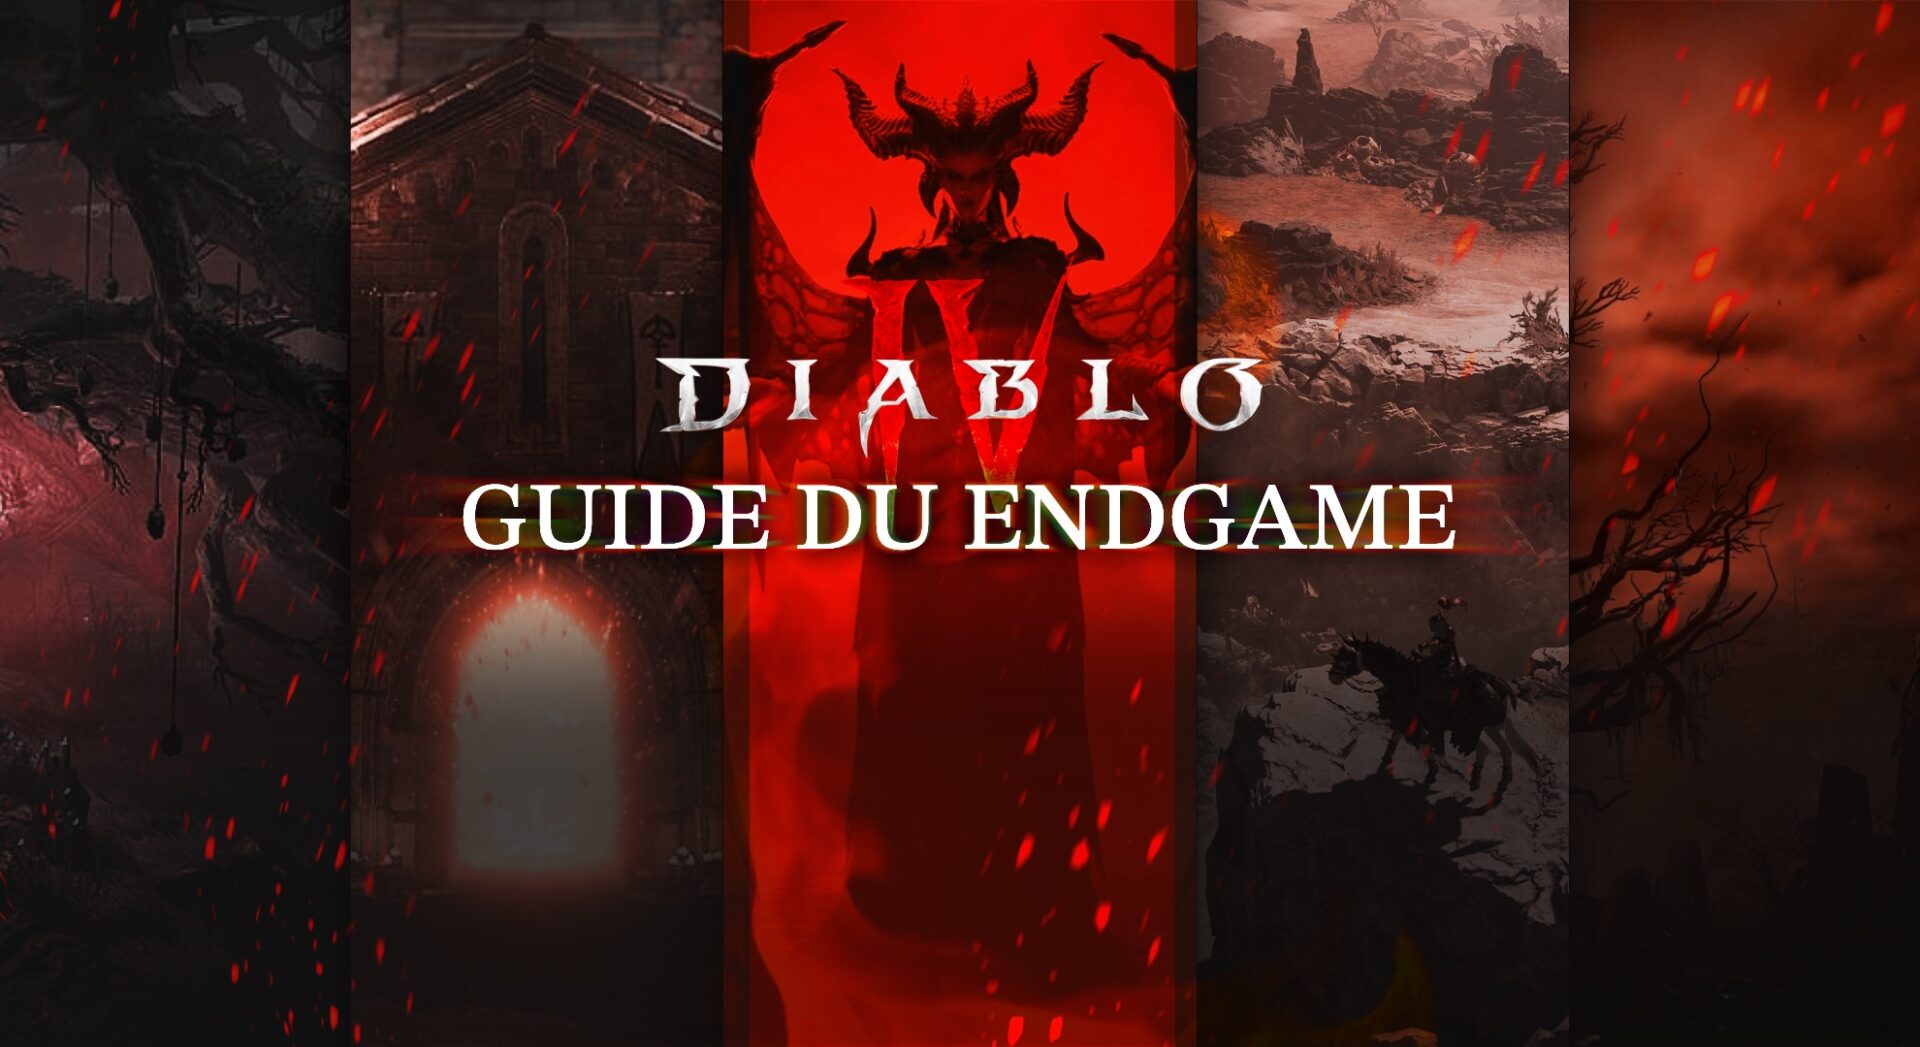 Diablo IV - Guide du endgame : Que faire après le niveau 50 ?